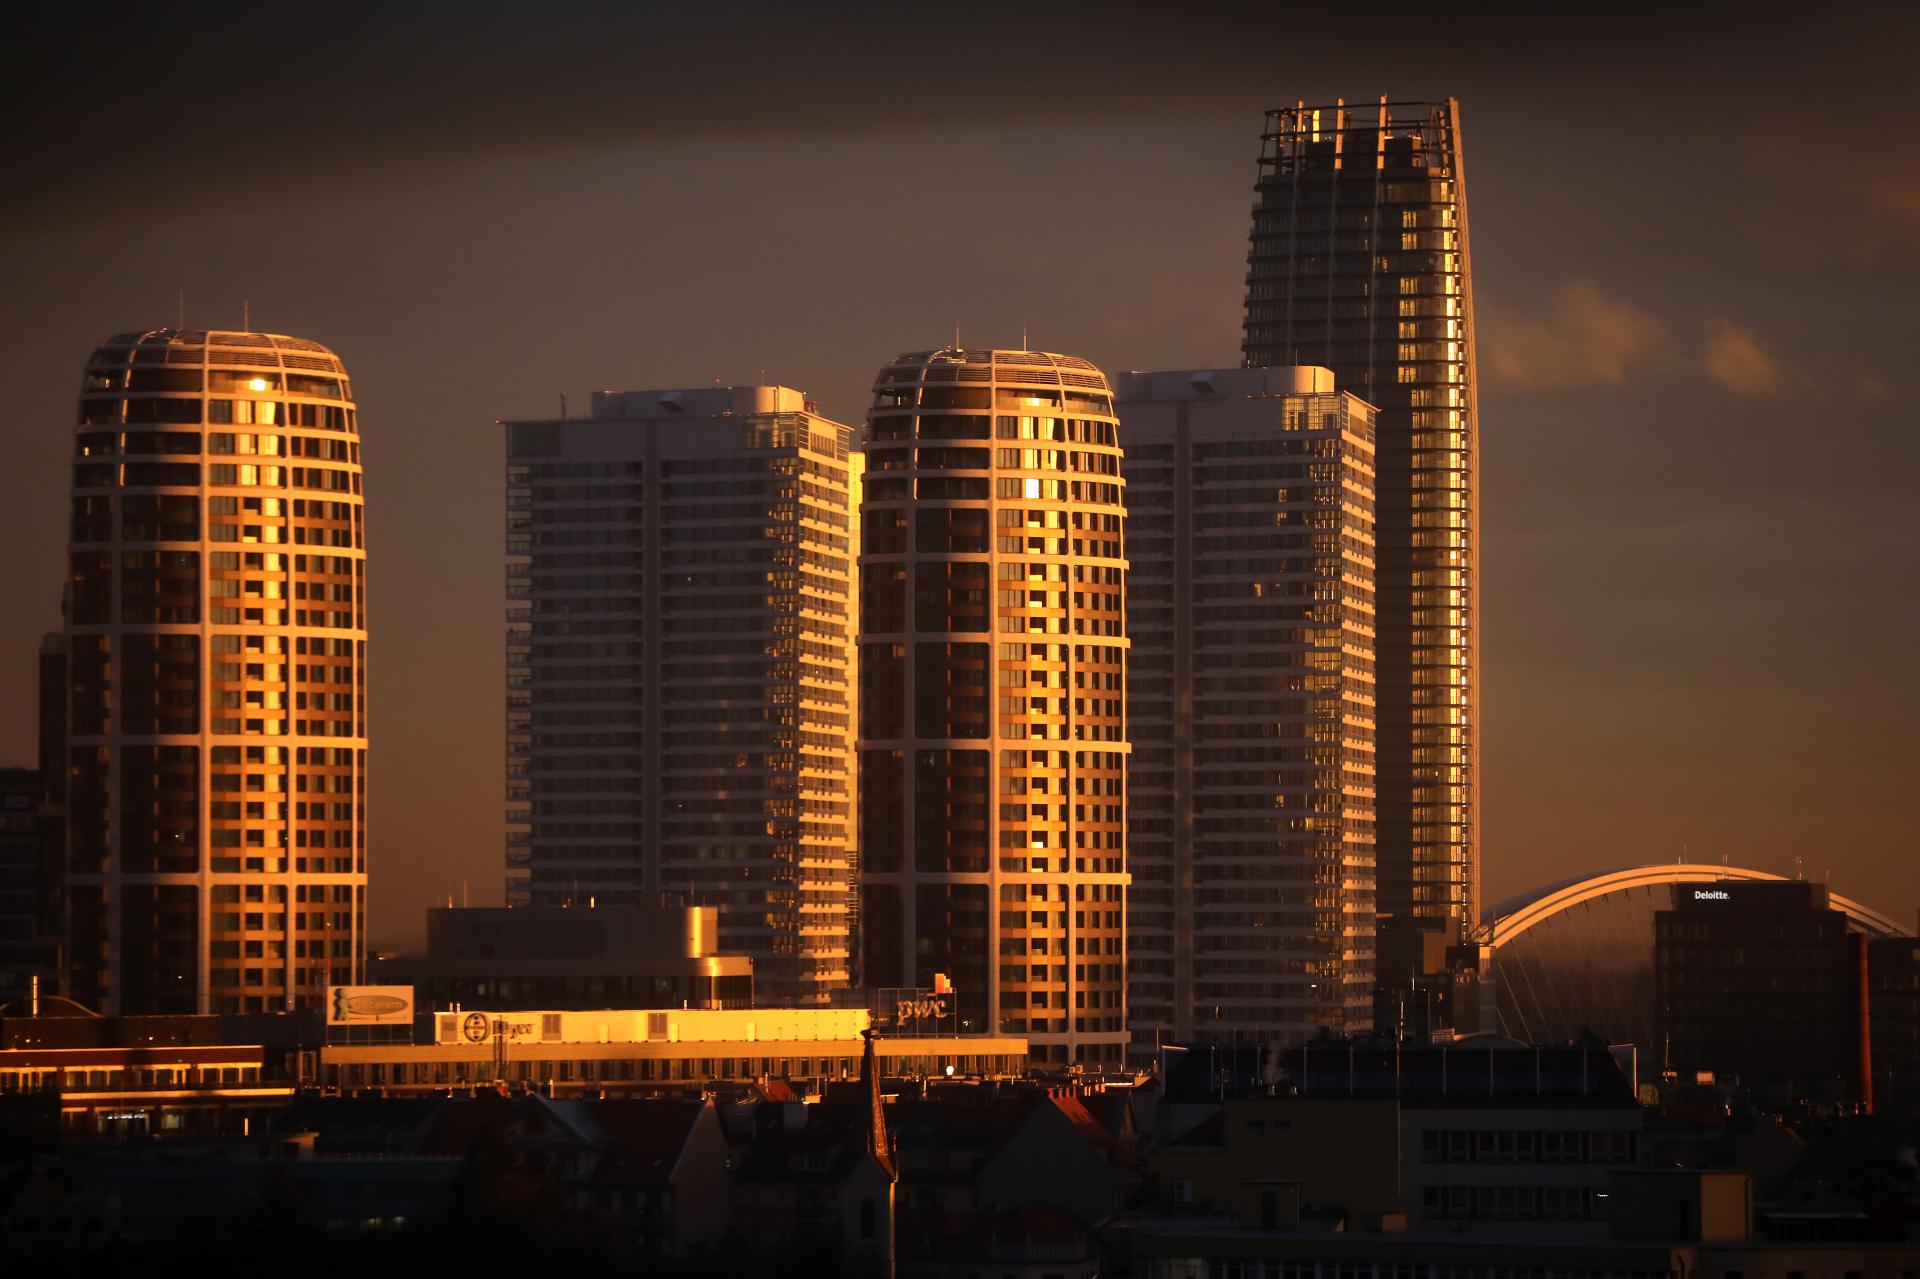 Predaj bytov v Bratislave by mohol štvrťročne vzrásť na 400 až 600 bytov, ukázala analýza